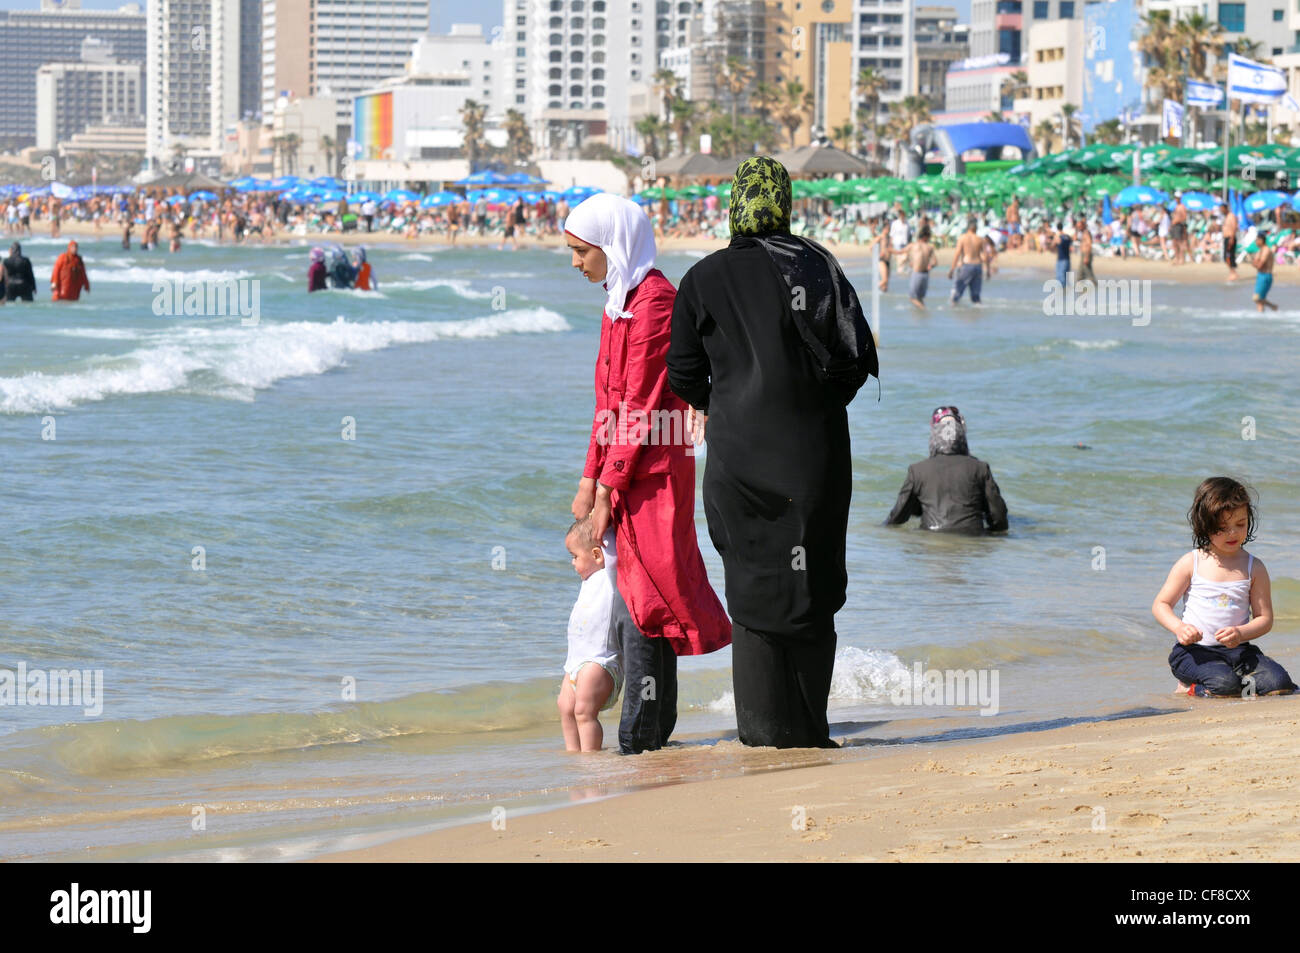 Israele, Tel Aviv, una famiglia araba godetevi una giornata di divertimento in spiaggia Foto Stock